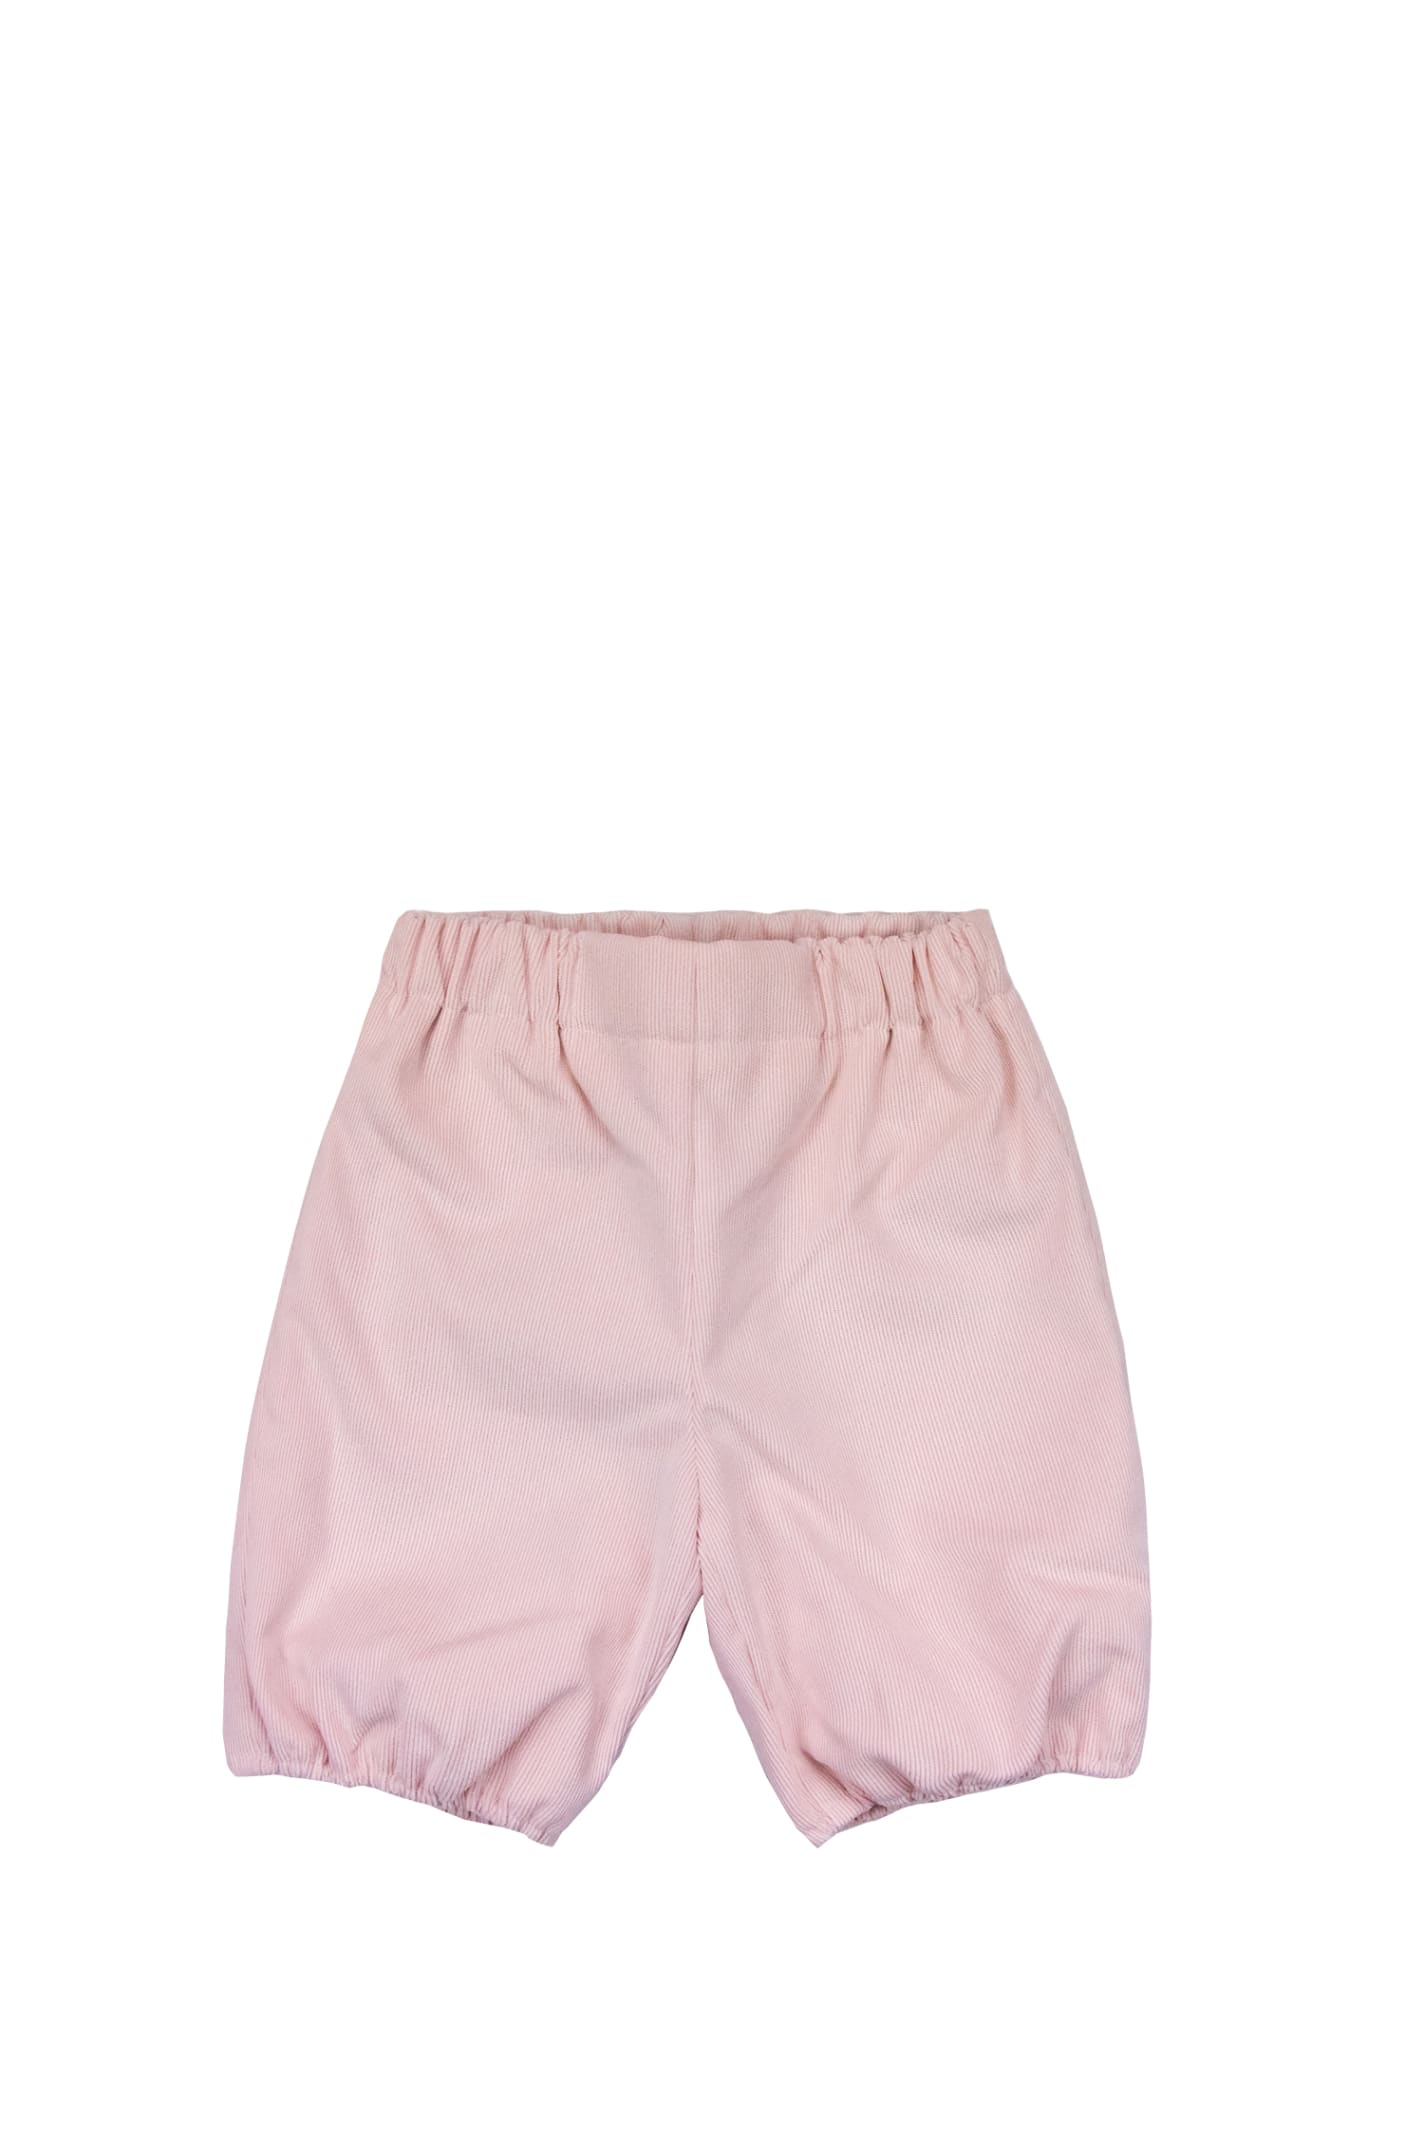 La Stupenderia Kids' Shorts In Rose